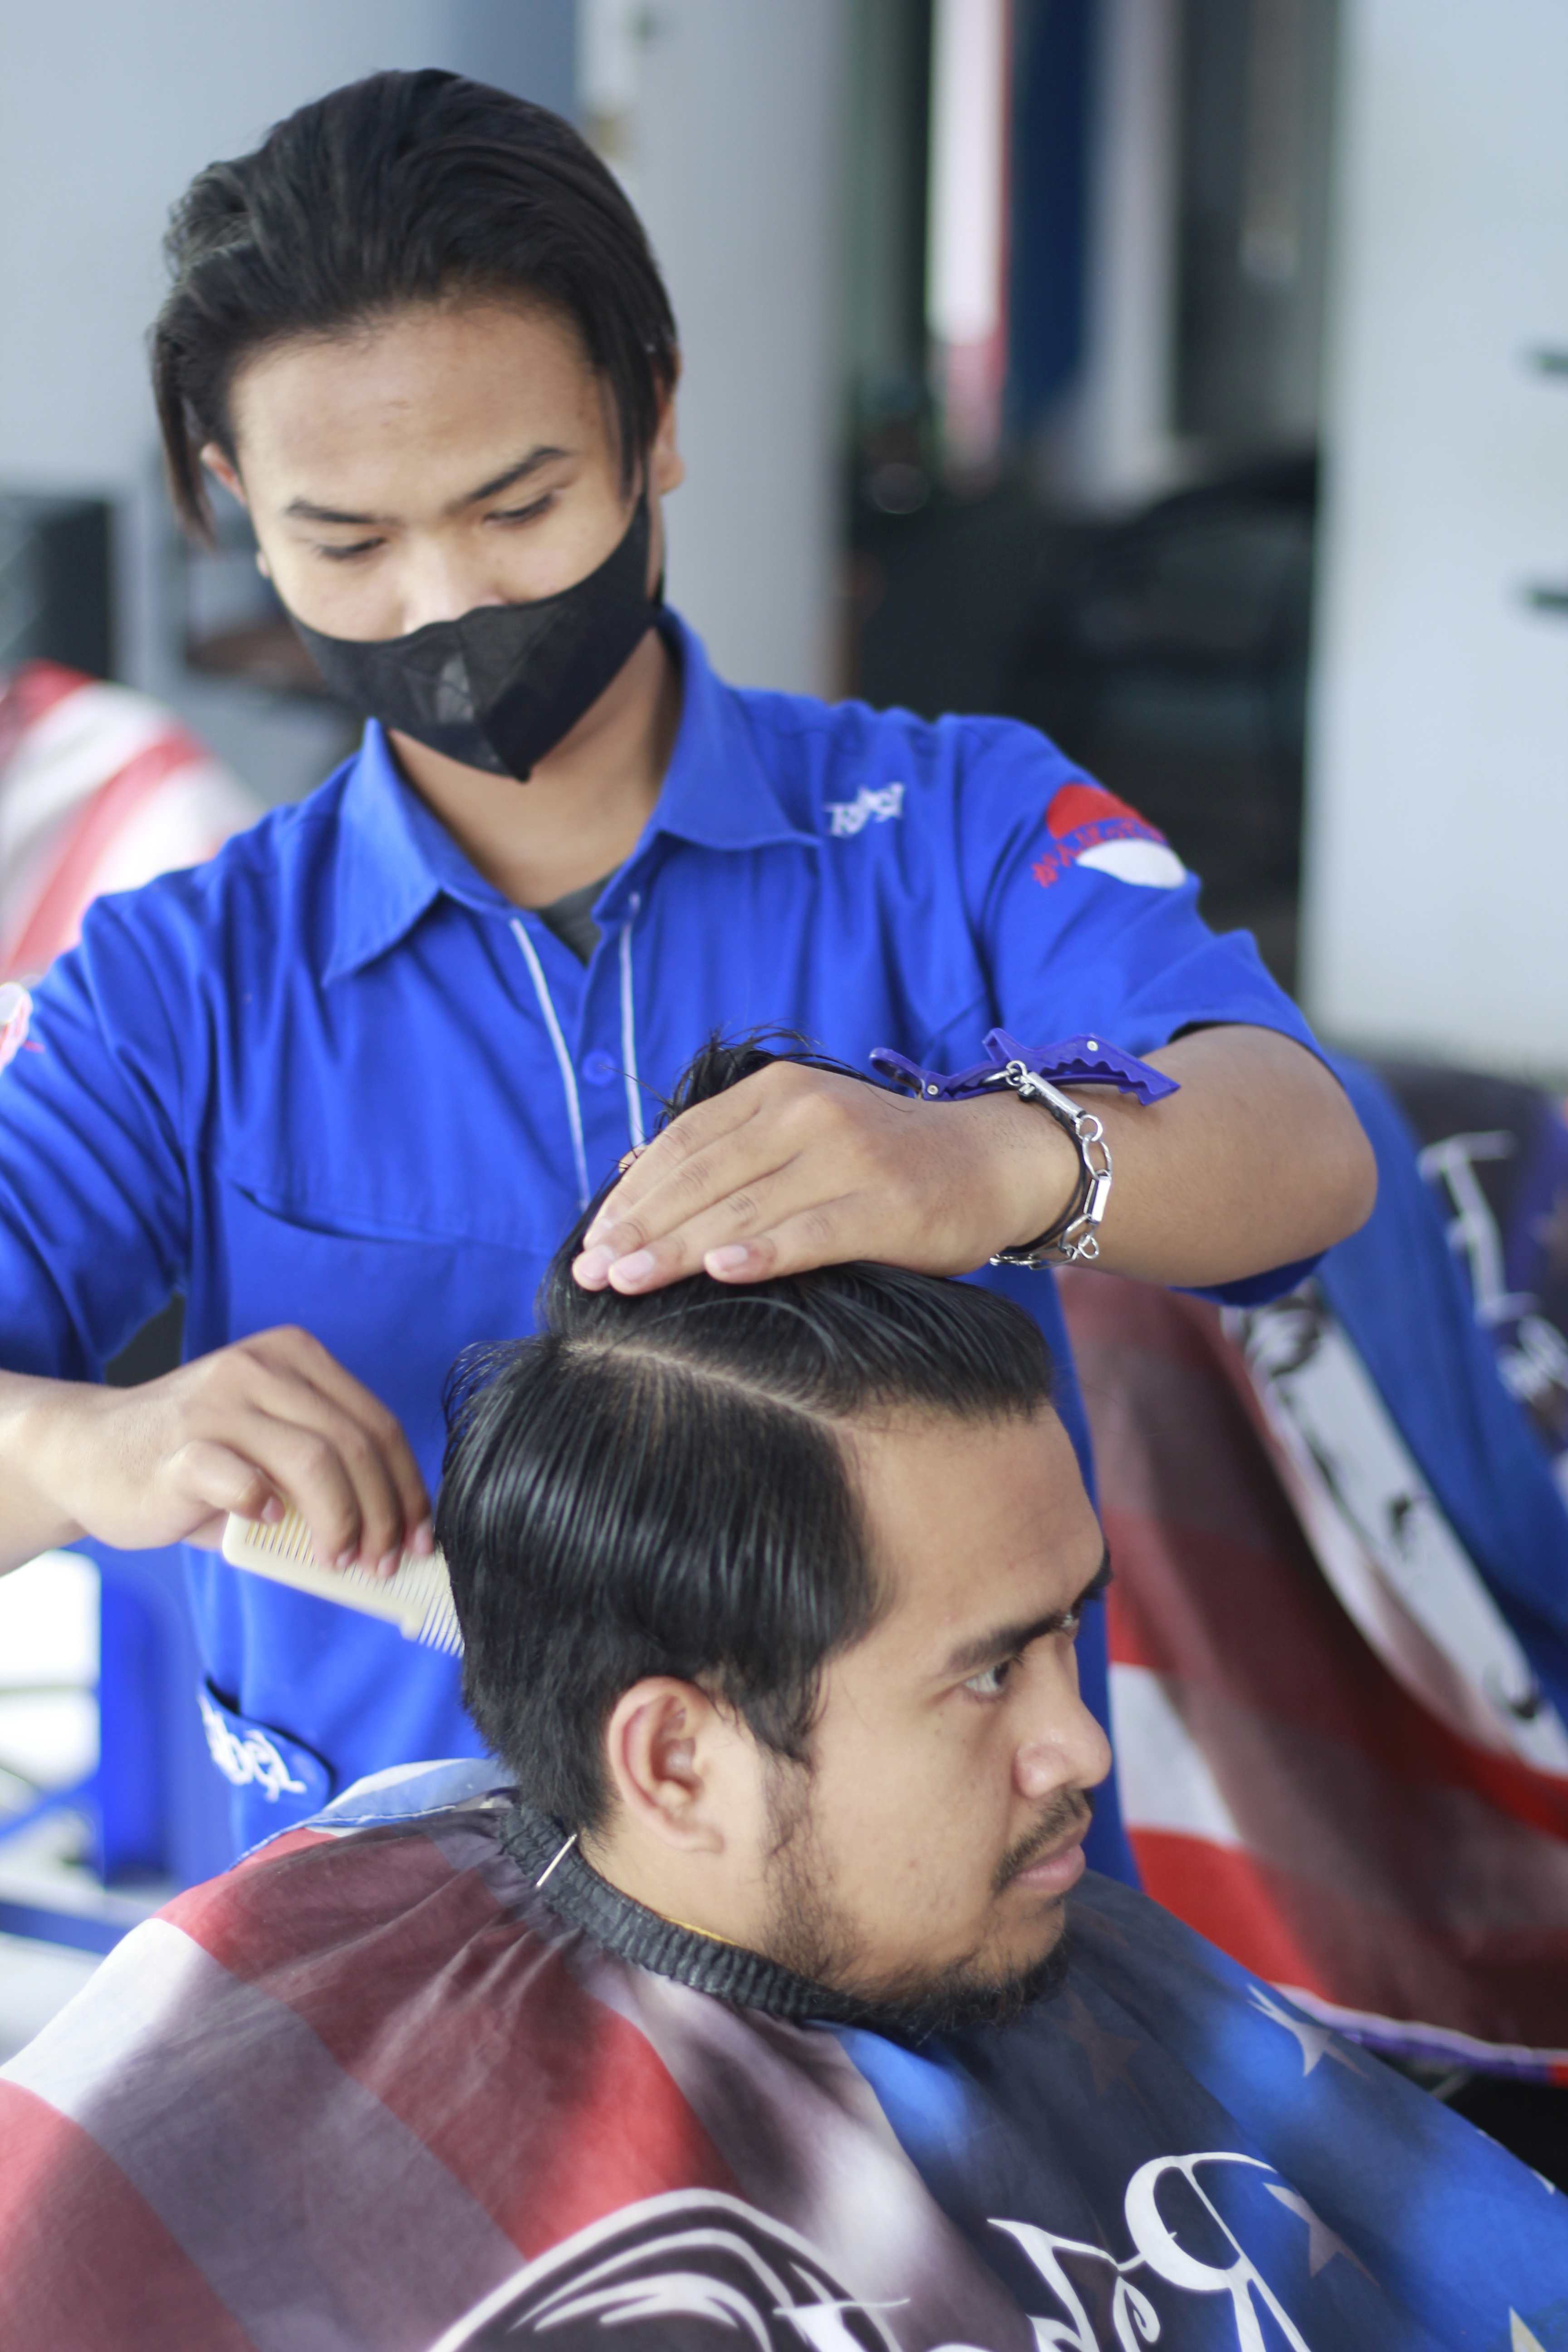 Lokasi Tempat Barbershop Di Kelurahan Sawojajar Profesional